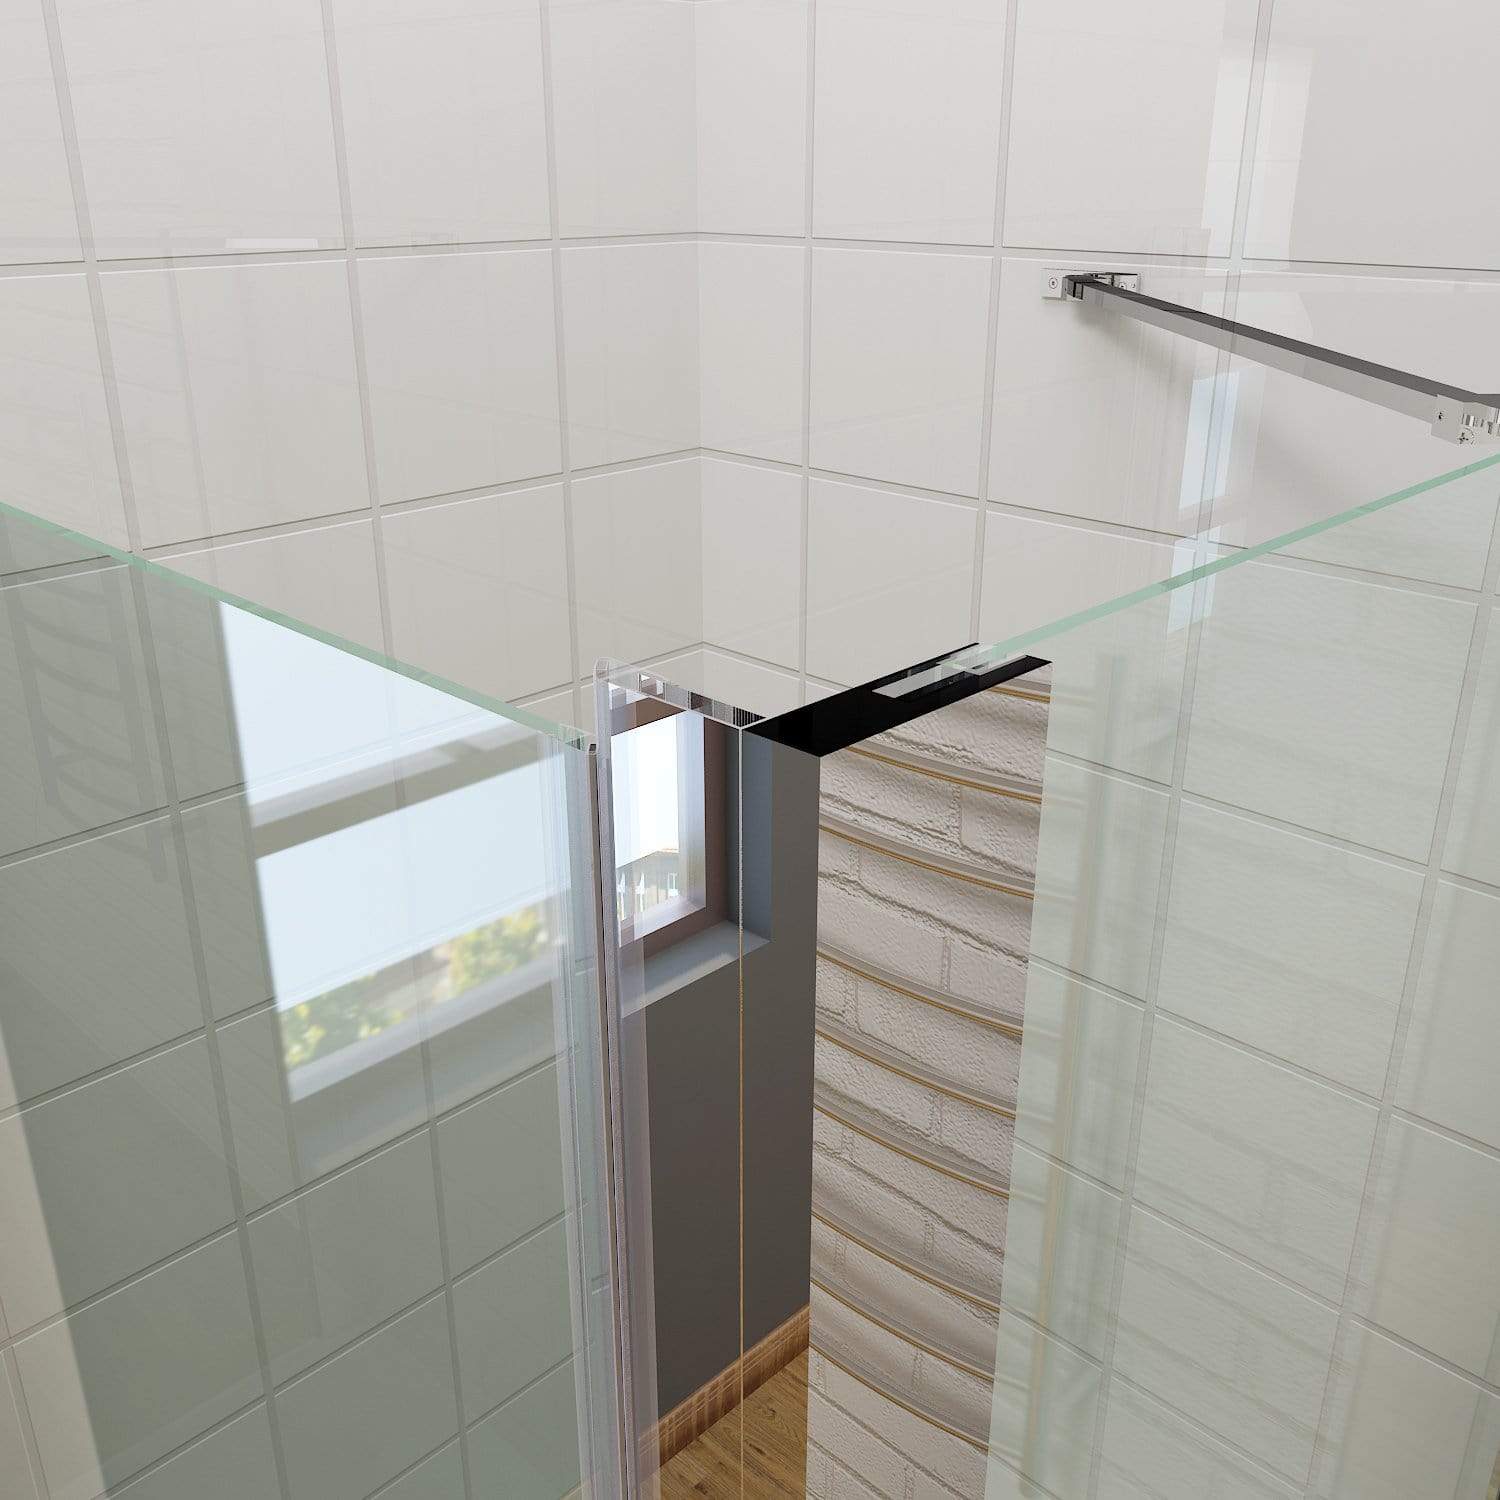 ELEGANT SHOWERS Bathroom Frameless Pivot Shower Screen - Elegantshowers